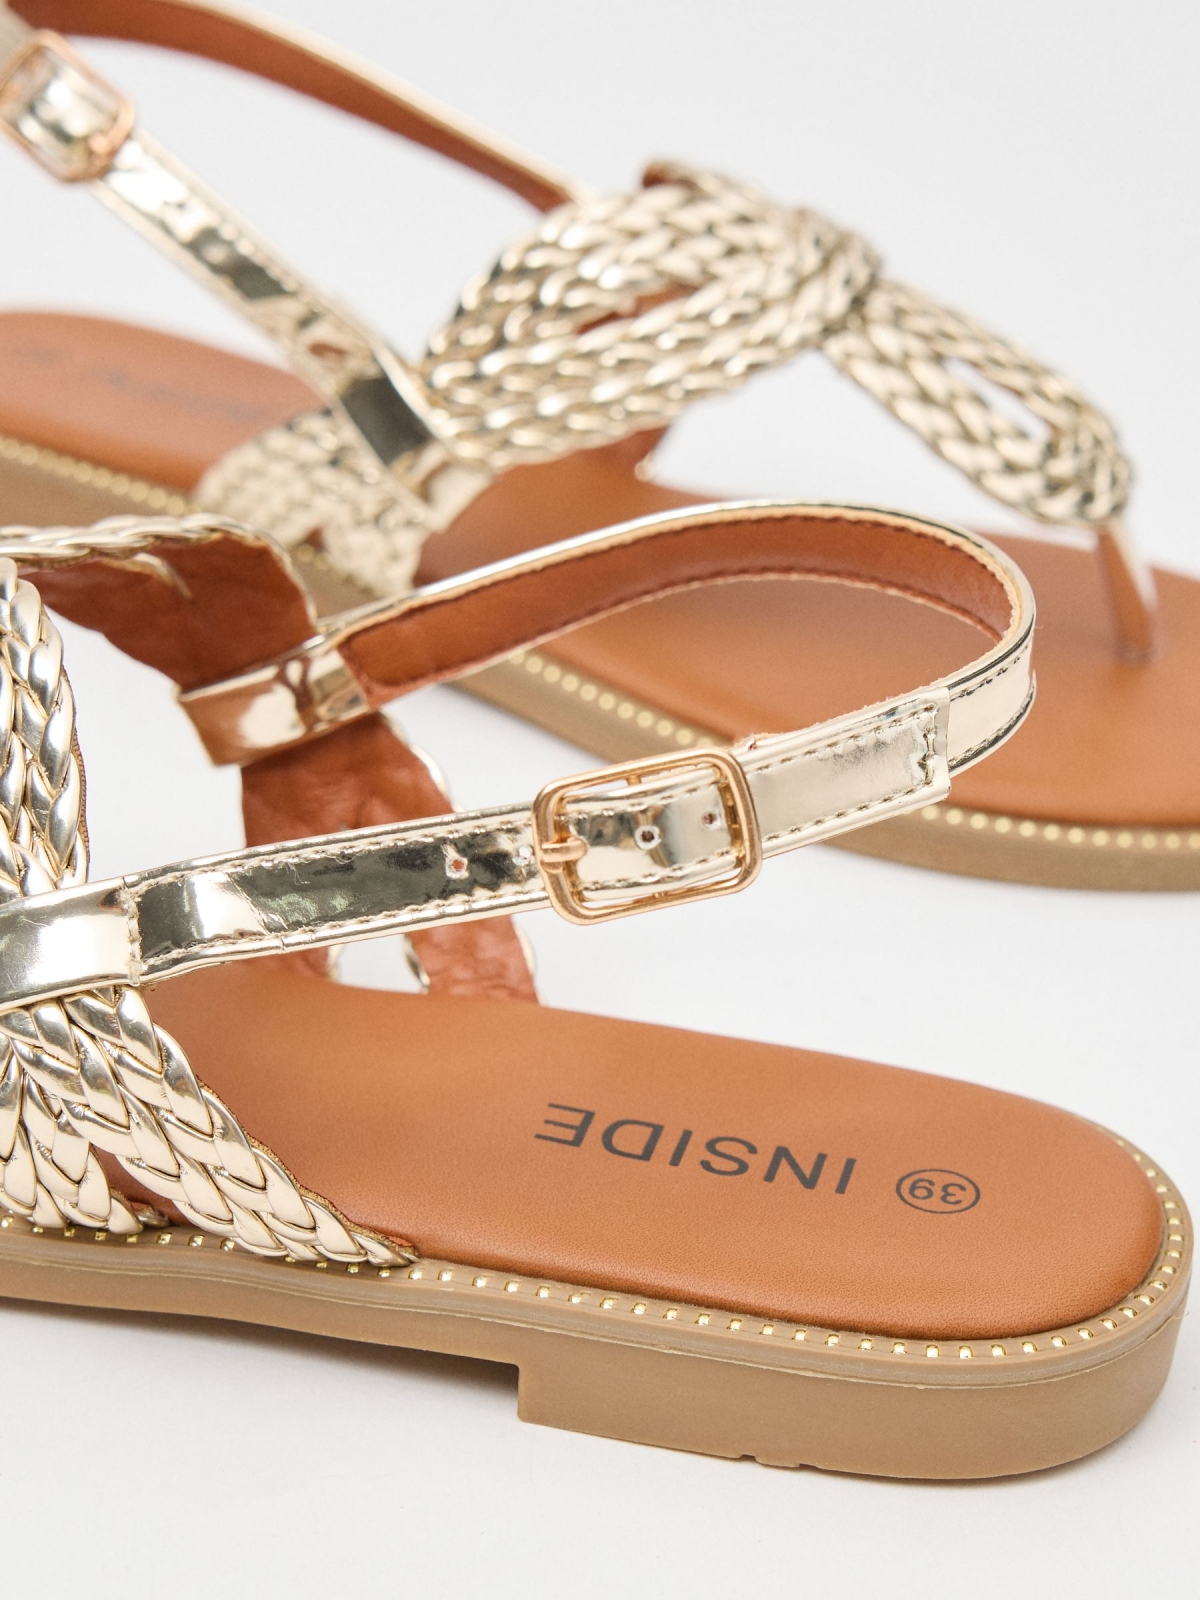 Sandália de biqueira entrançada com brilhantes dourado/prata vista detalhe